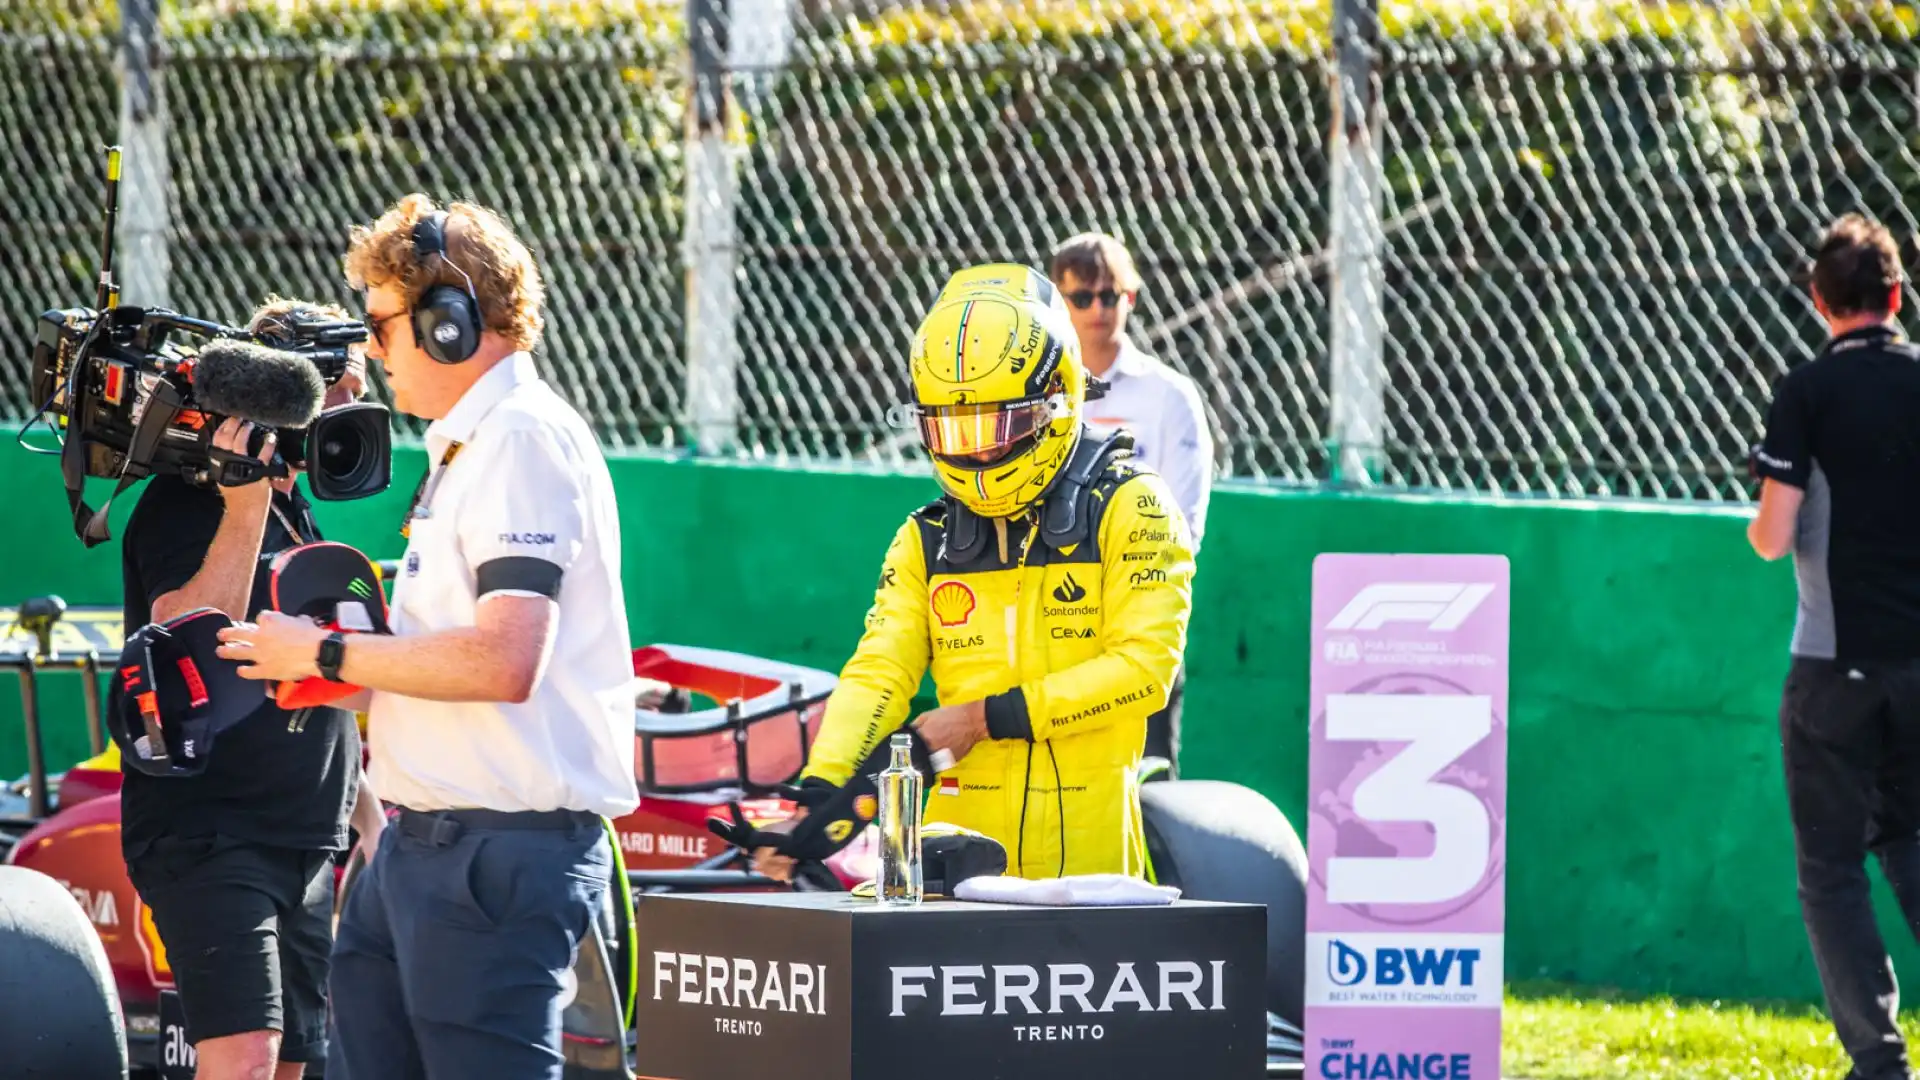 Terzo tempo per l'altro ferrarista Carlos Sainz, retrocesso però a fondo griglia per la sostituzione del motore. Foto di Cristian Lovati